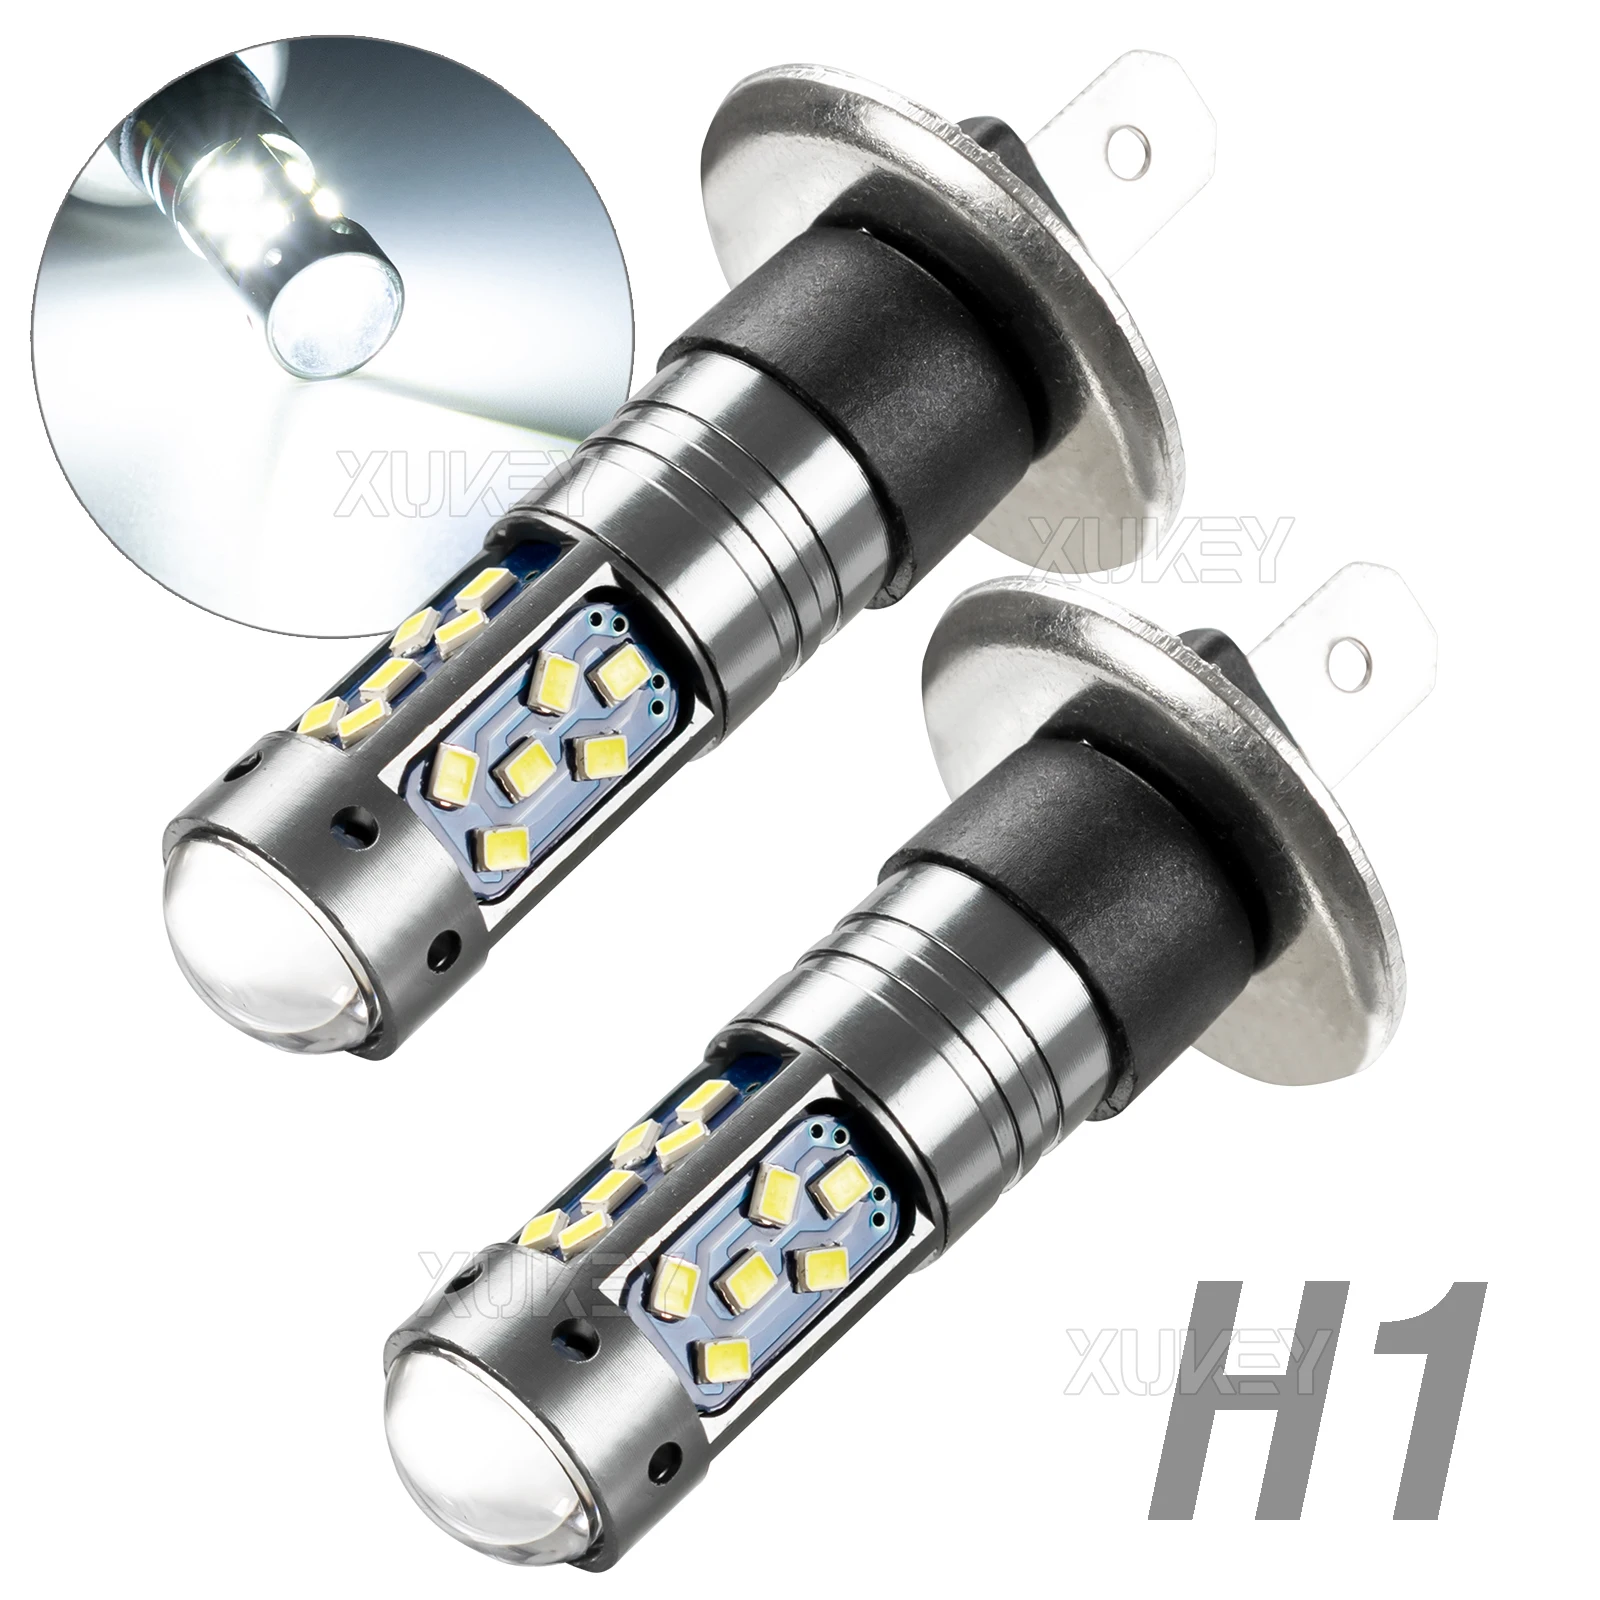 Mini Size H1 LED Car Motorcycle Fog Light Bulbs Conversion Kit - £15.53 GBP